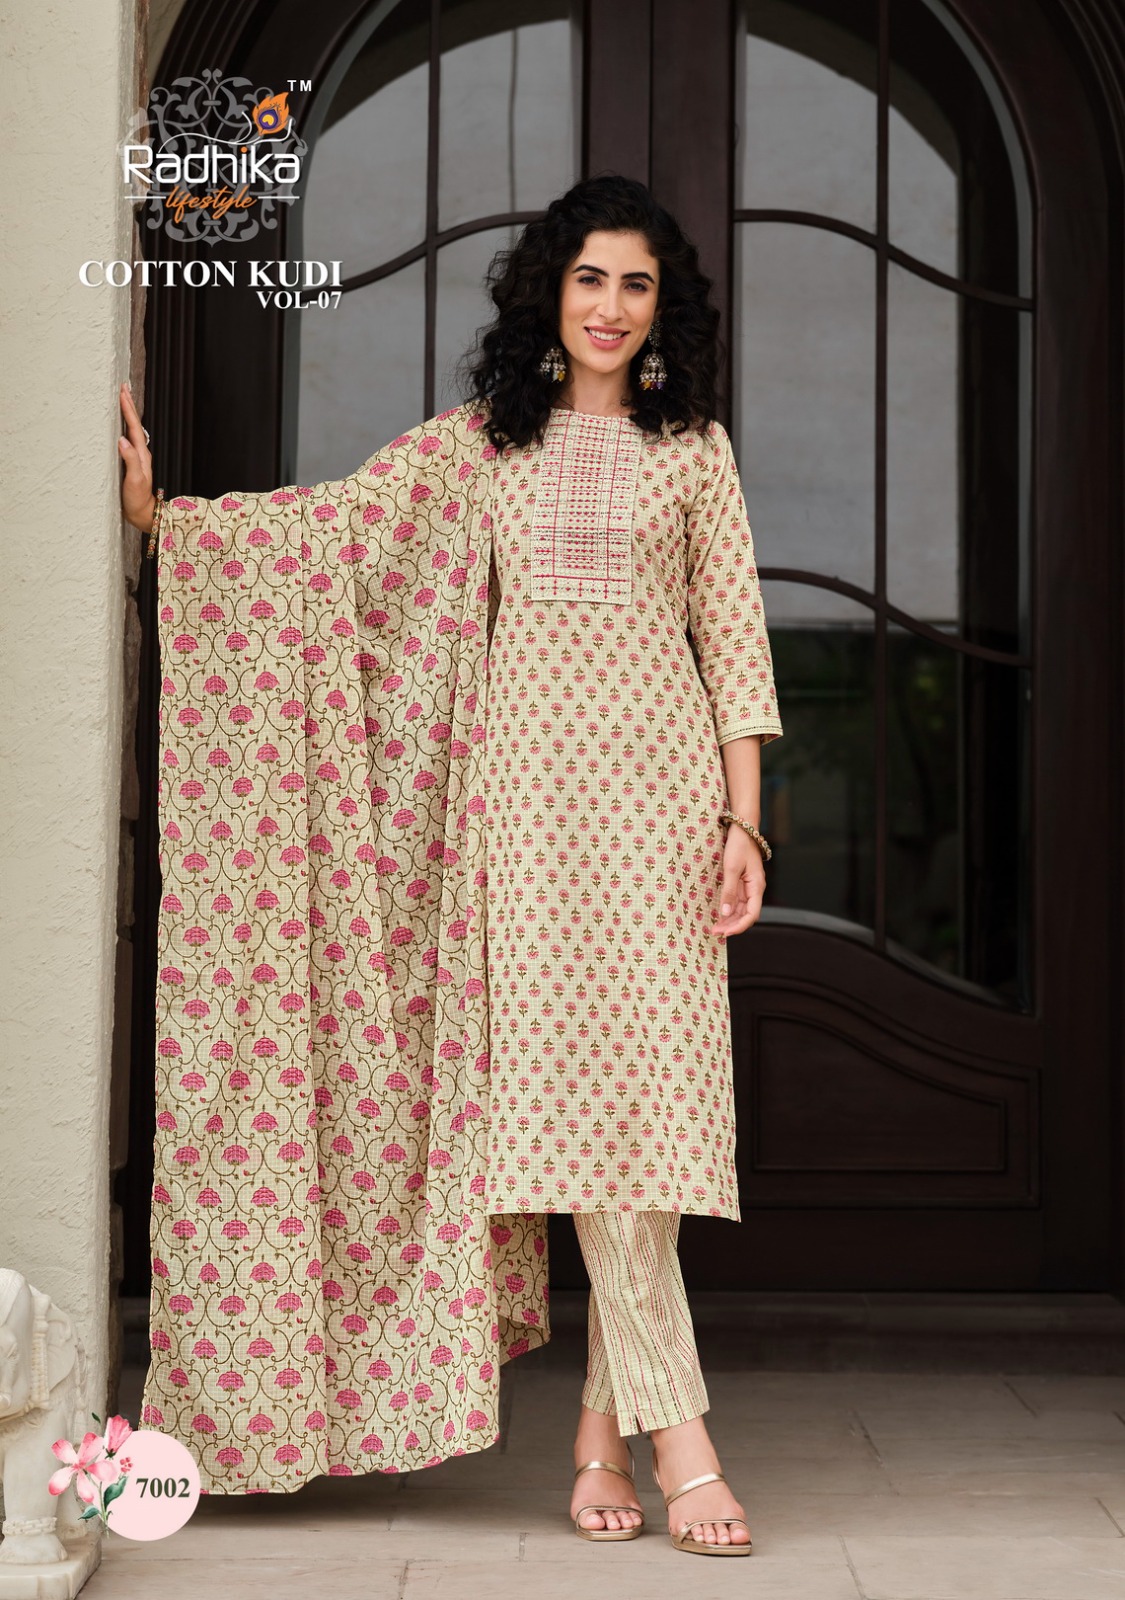 Radhika Cotton Kudi Vol 7 collection 6